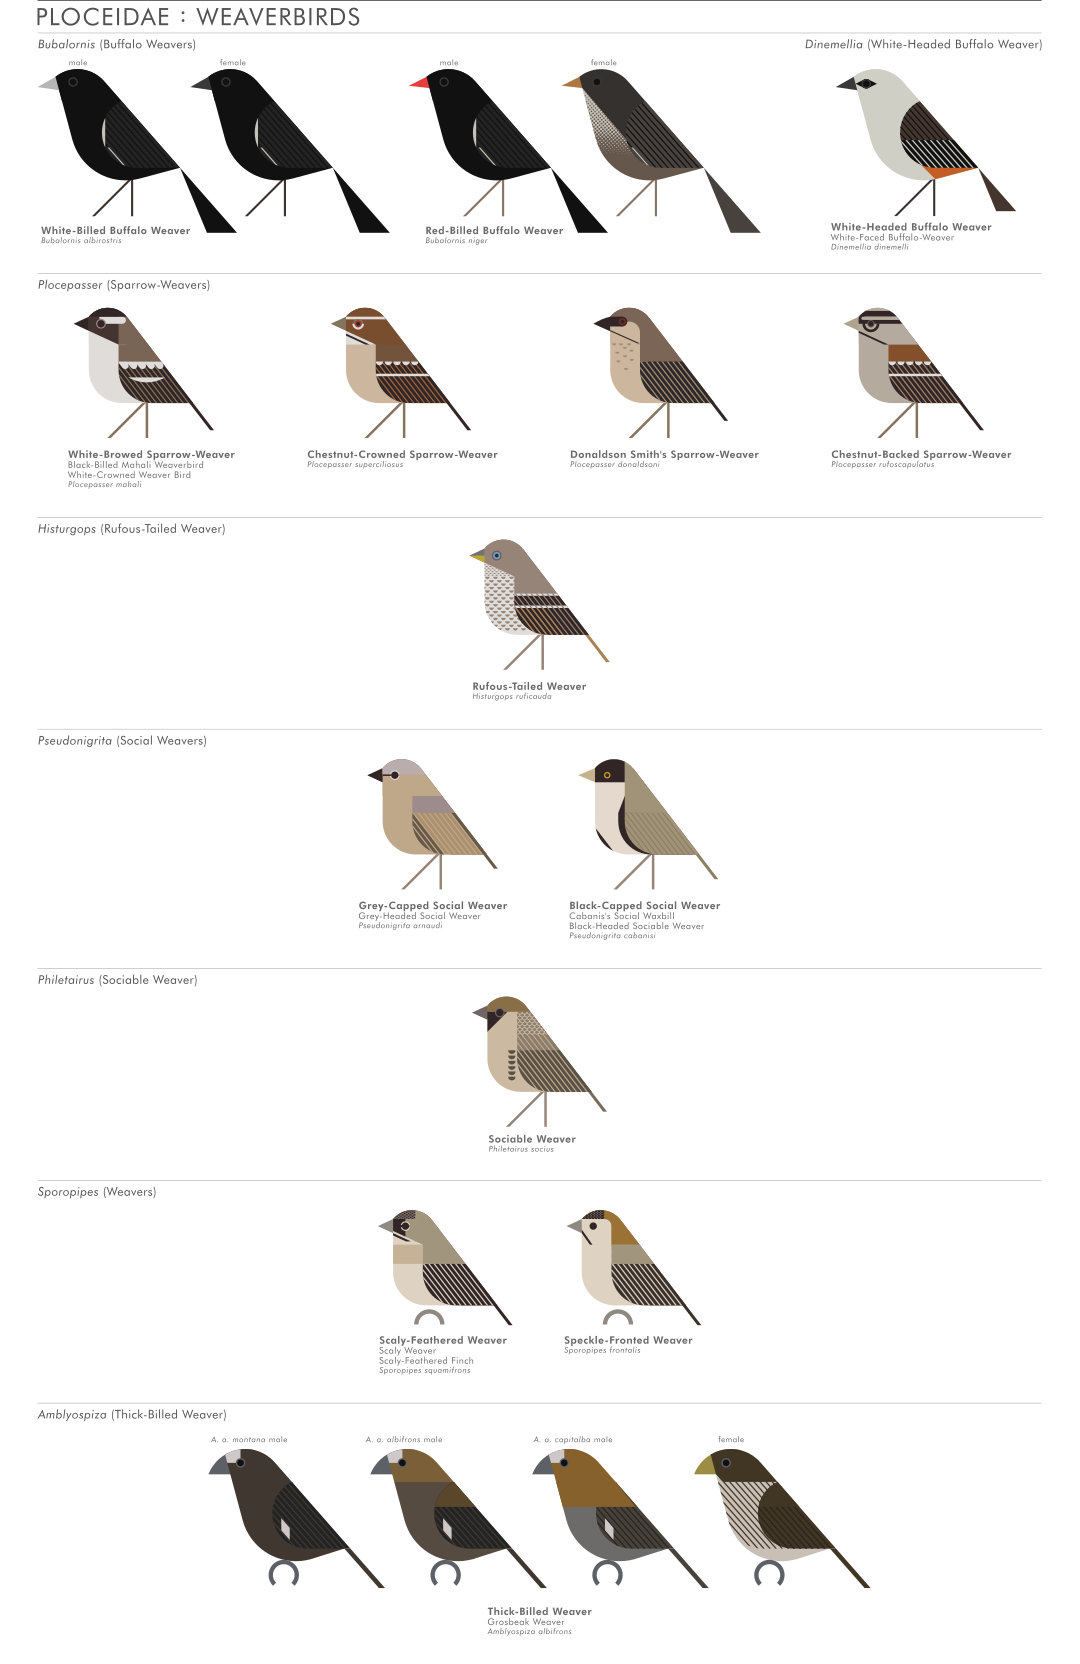 scott partridge - AVE - avian vector encyclopedia - weavers - bird vector art